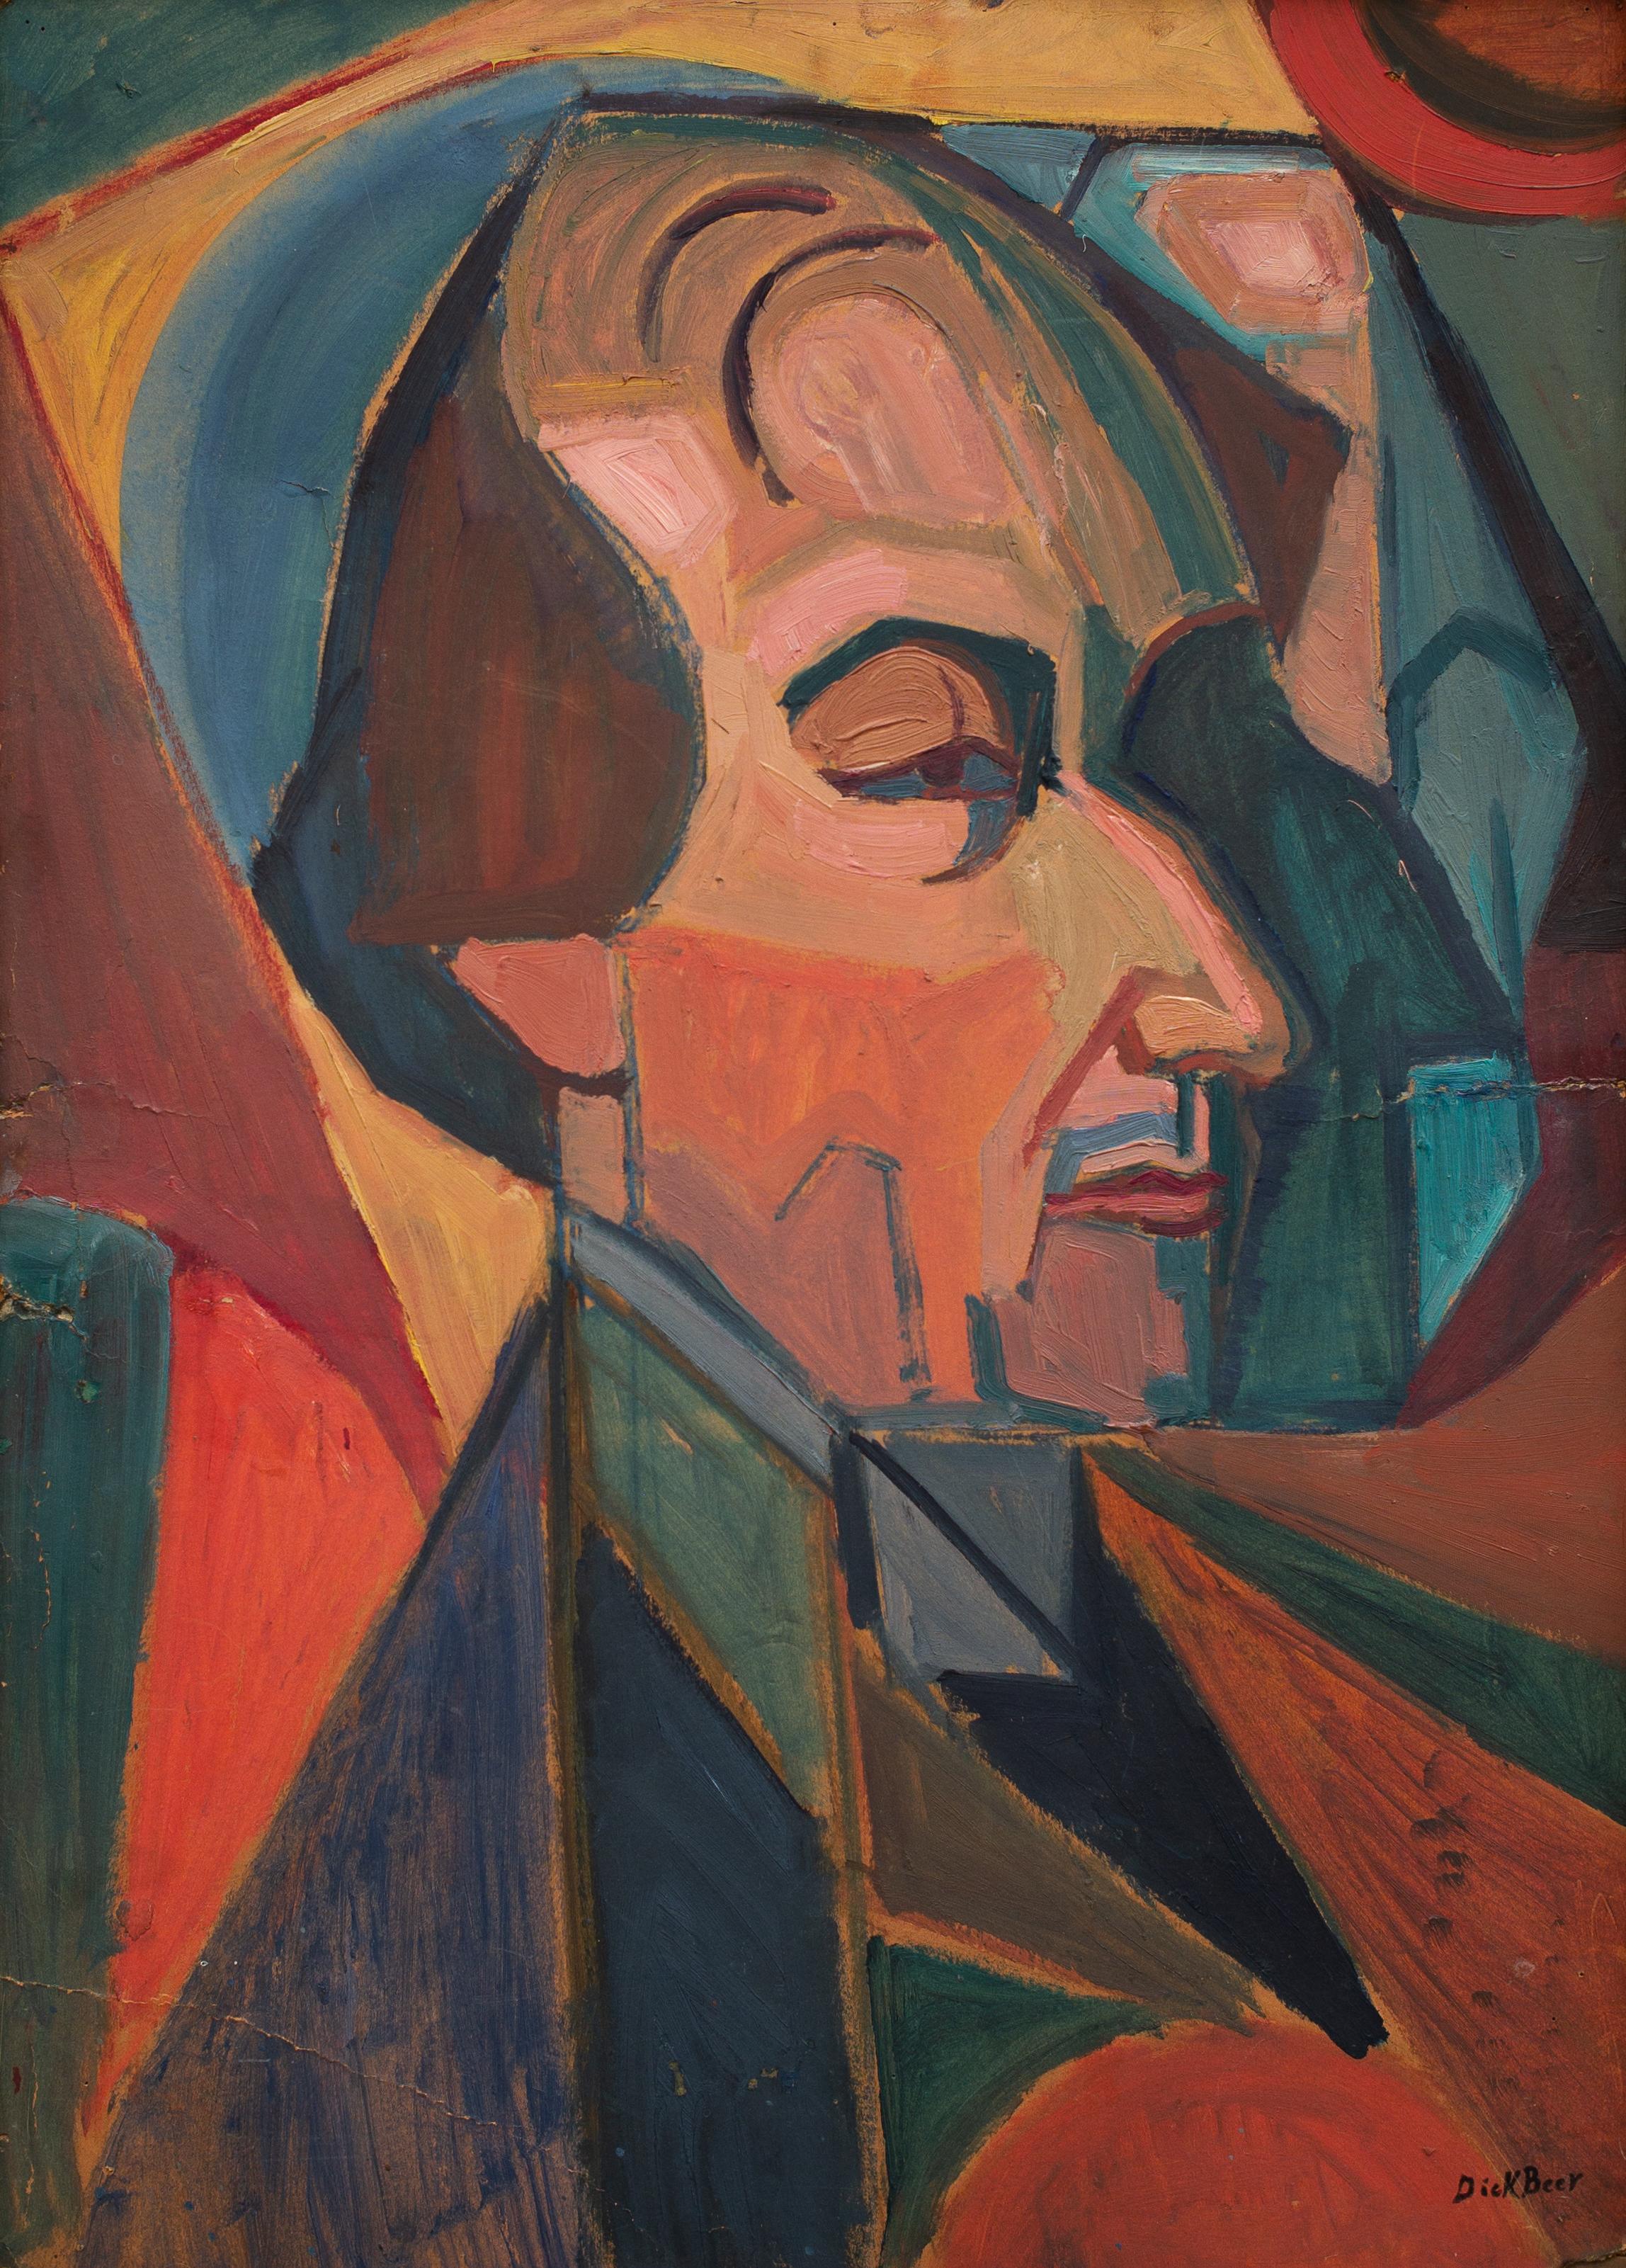 Dick Beer Abstract Painting – Kubistisches Gemälde aus den Jahren 1918-19, Porträt von Dr. Mens III